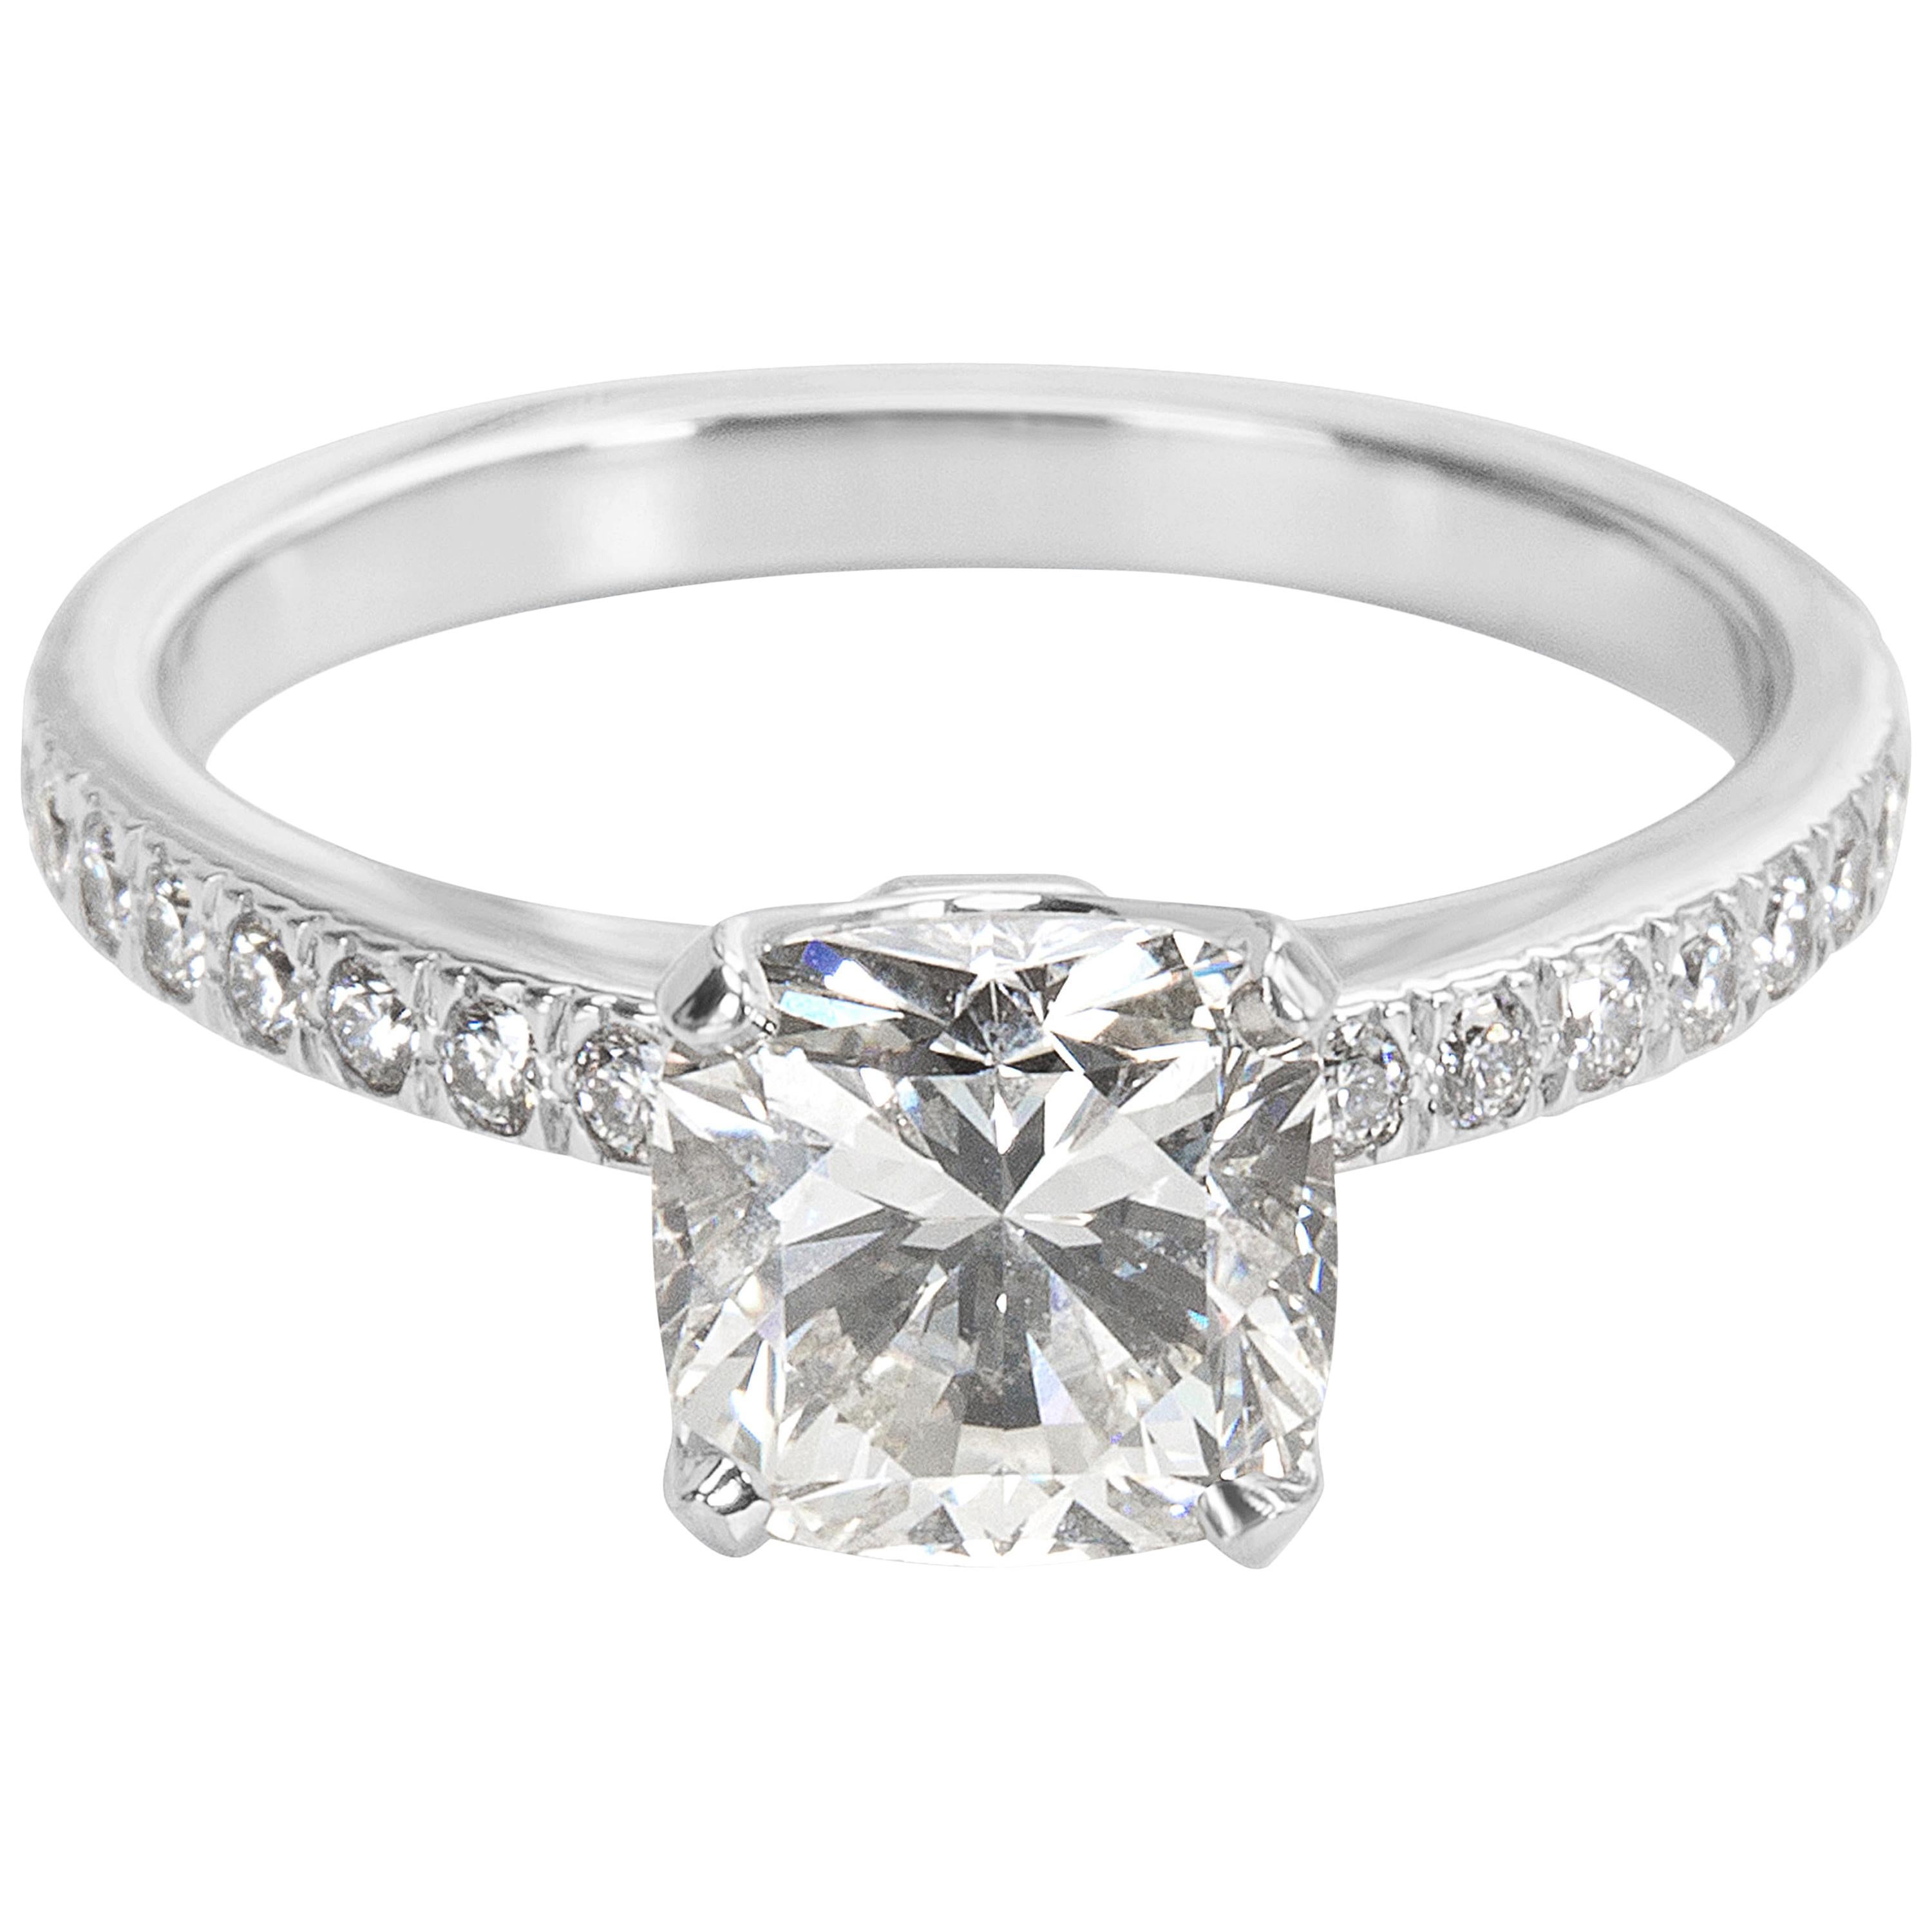 Tiffany & Co. Novo Cushion Diamond Engagement Ring in Platinum I/VS1 1.51 Carat